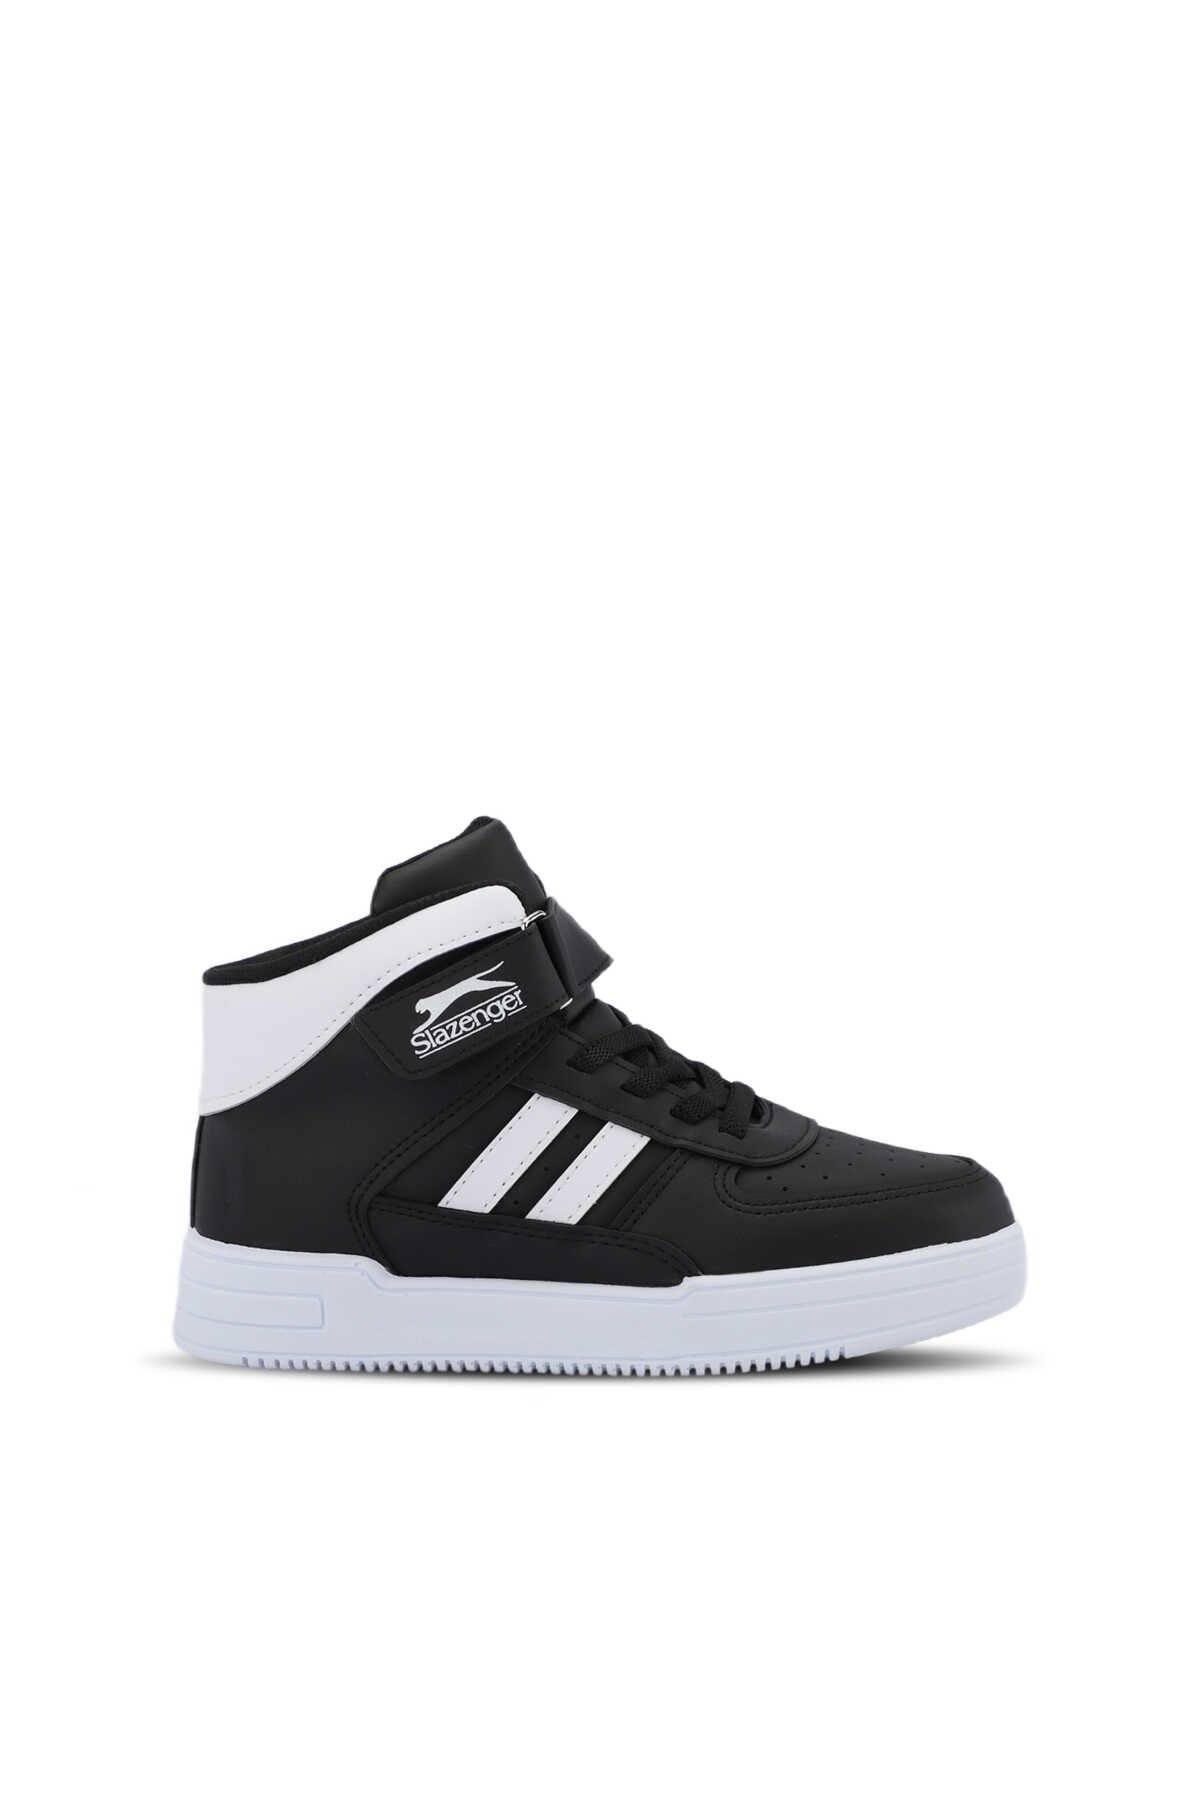 Slazenger - Slazenger NICOLA I Sneaker Erkek Çocuk Ayakkabı Siyah / Beyaz